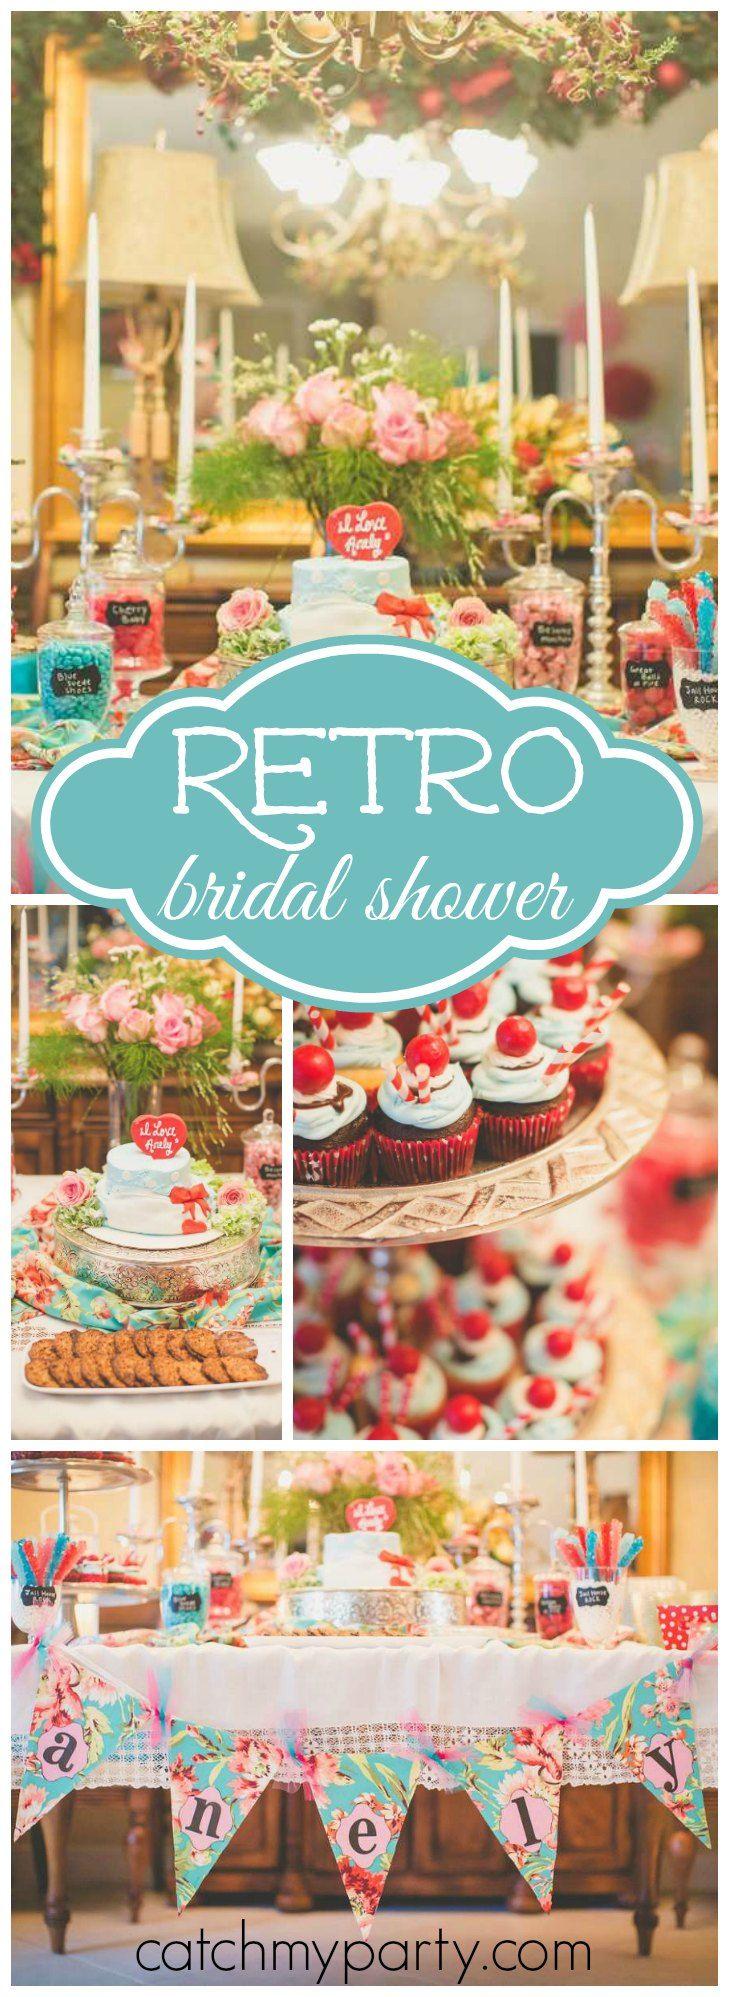 Свадьба - Retro 50's Housewife / Bridal/Wedding Shower "Anely's Retro Housewife Bridal Shower"